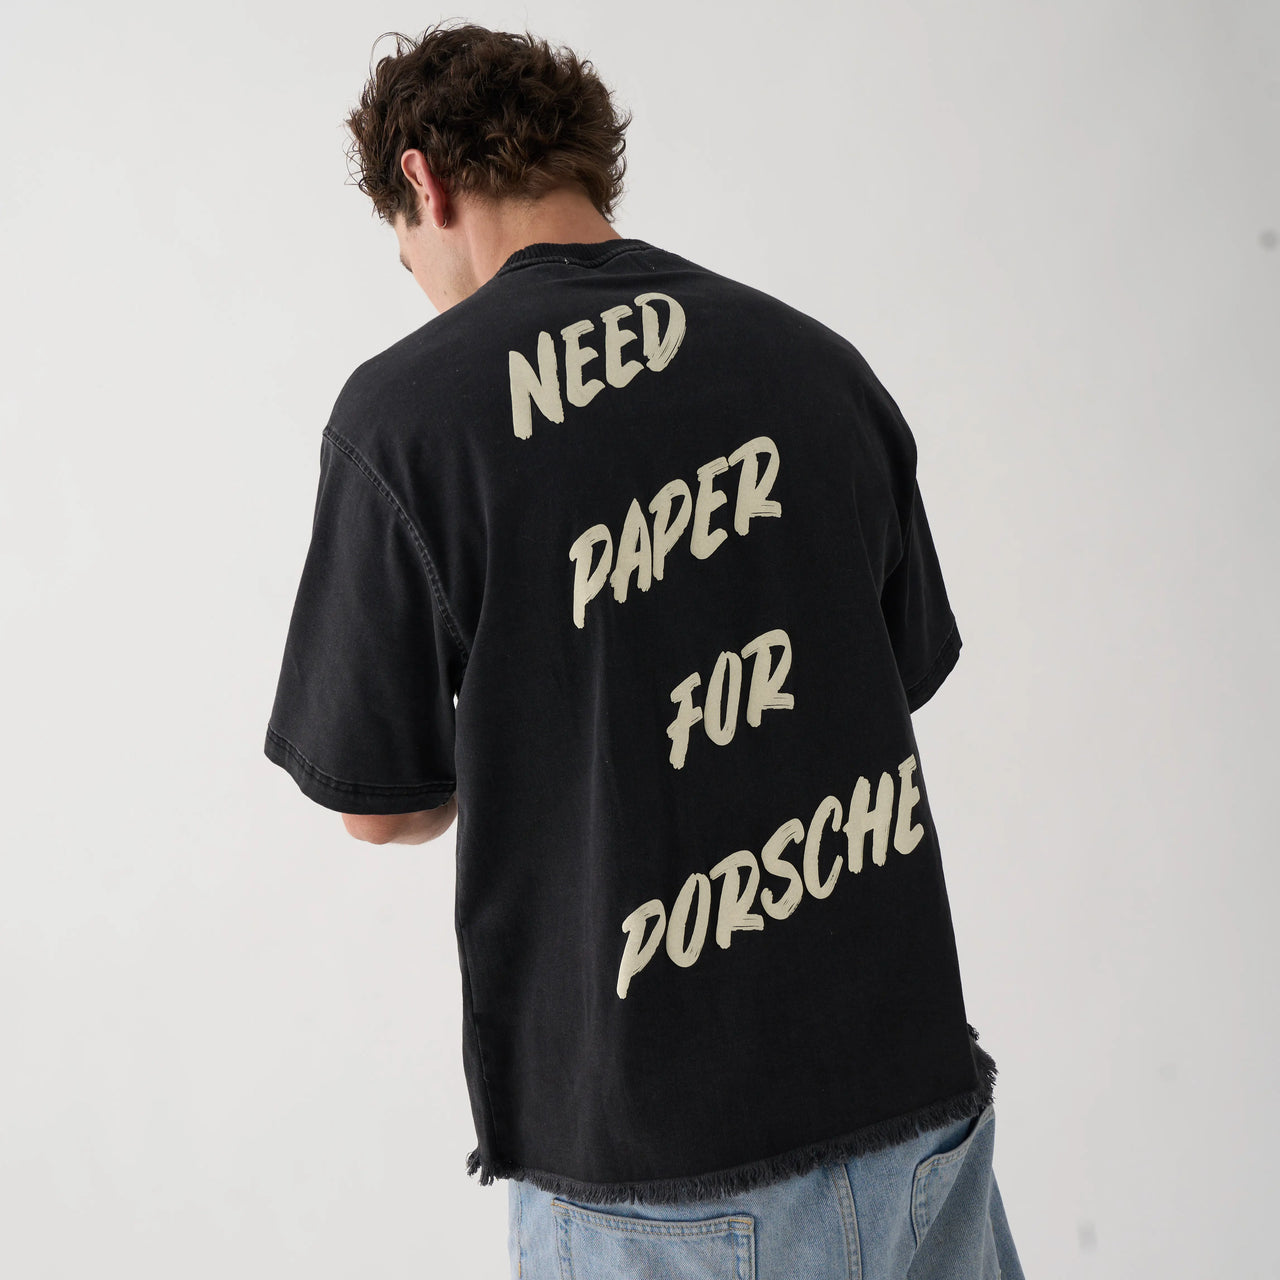 NEED PAPER FOR PORSCHE T-SHIRT